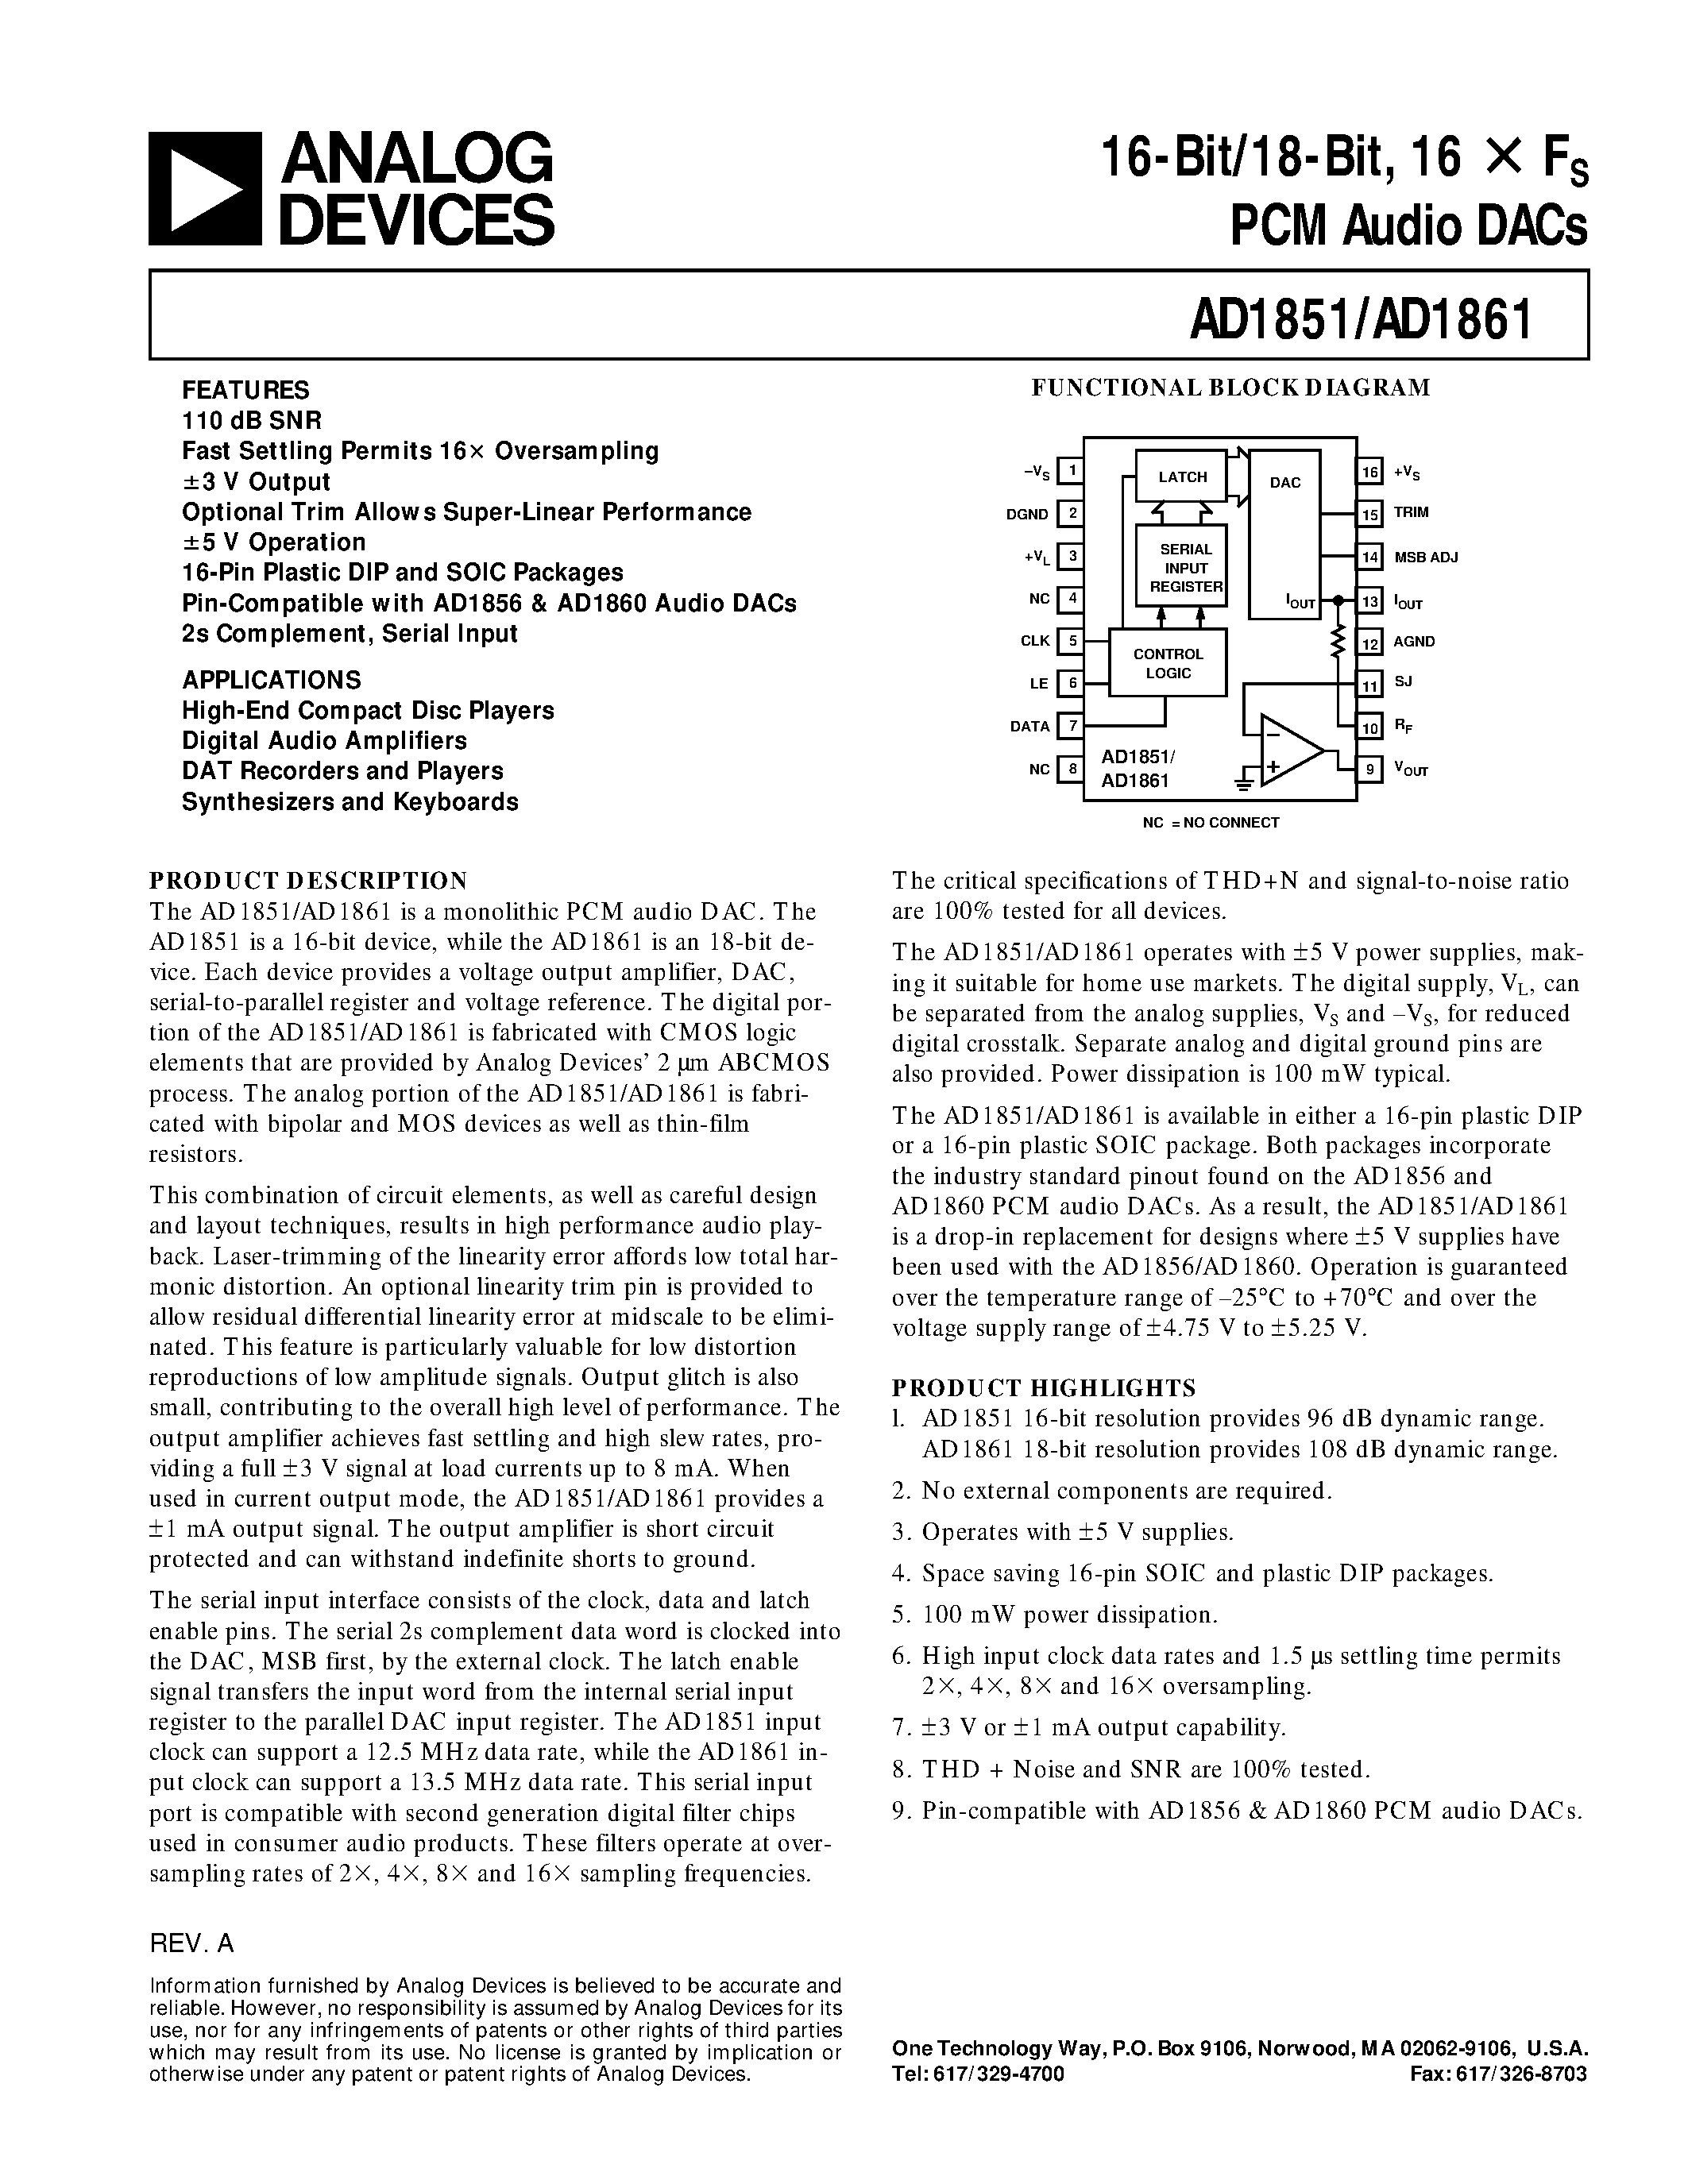 Даташит AD1851R-J - 16-Bit/18-Bit/ 16 X Fs PCM Audio DACs страница 1